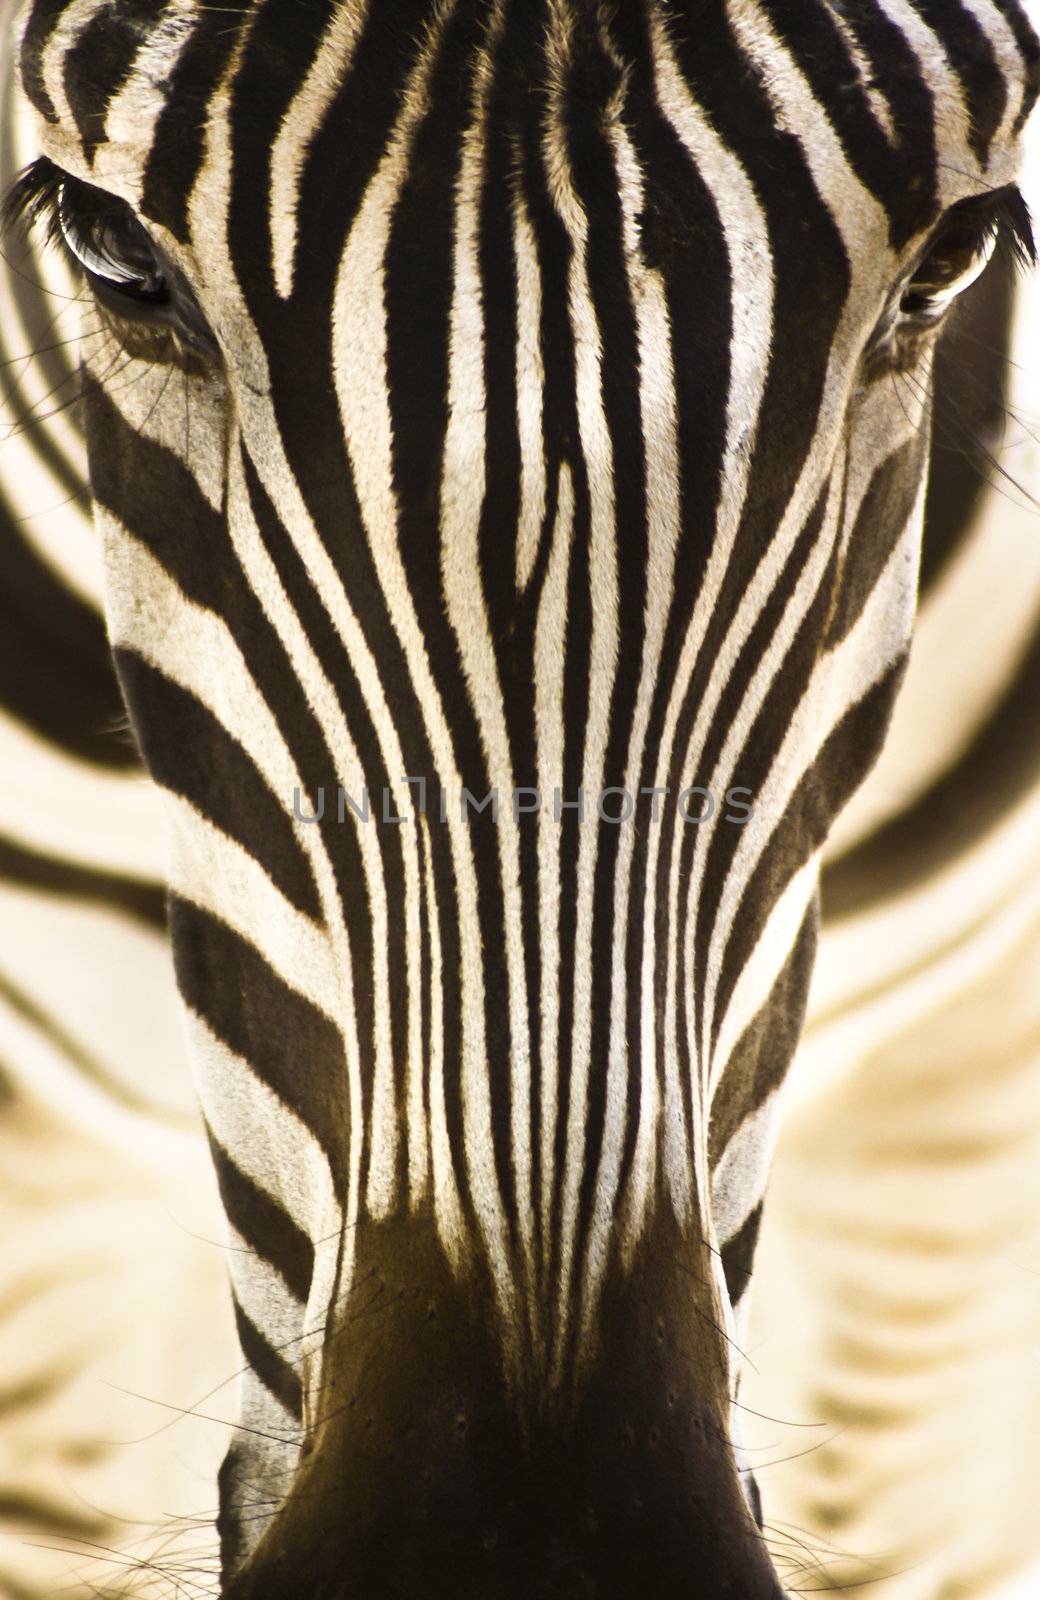 Portrait of a zebra by kasto